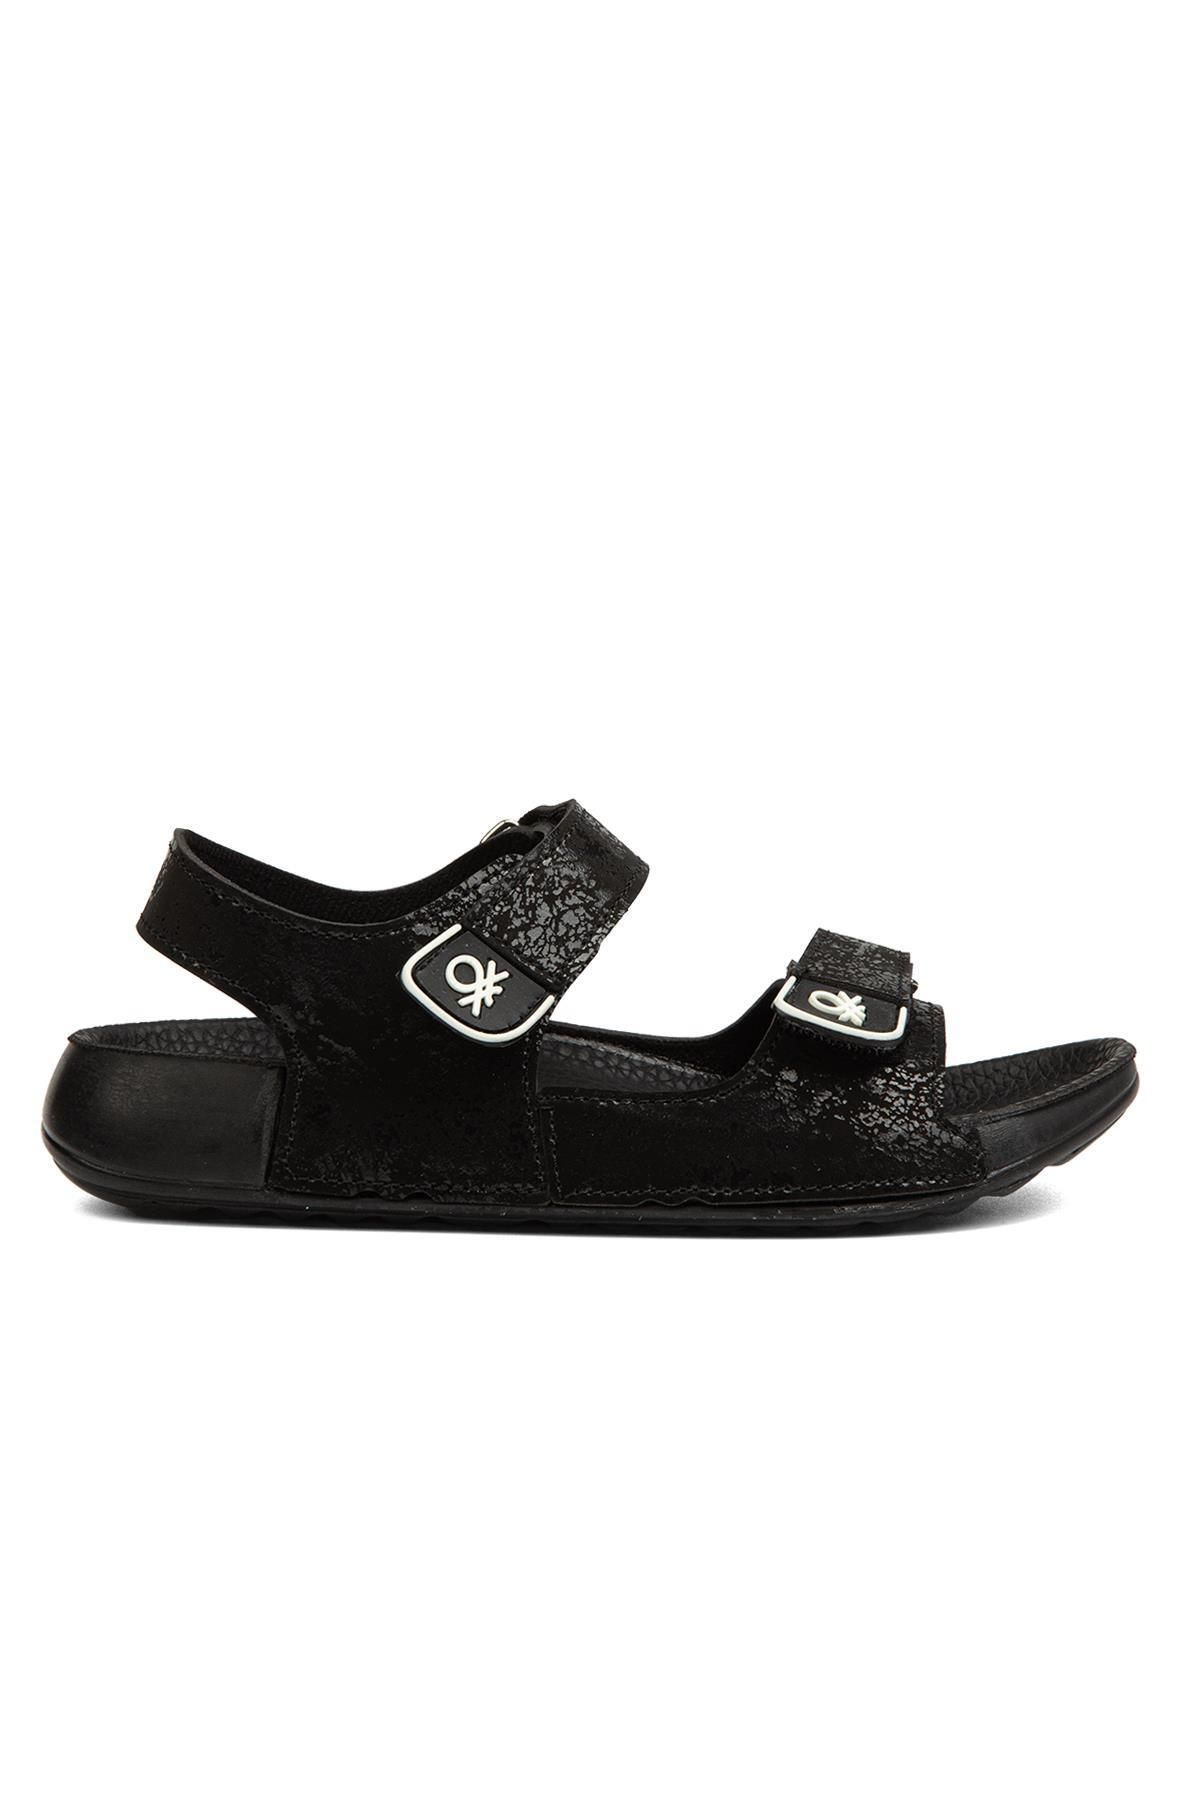 Benetton ®|BN-1238- Siyah - Çocuk Sandalet